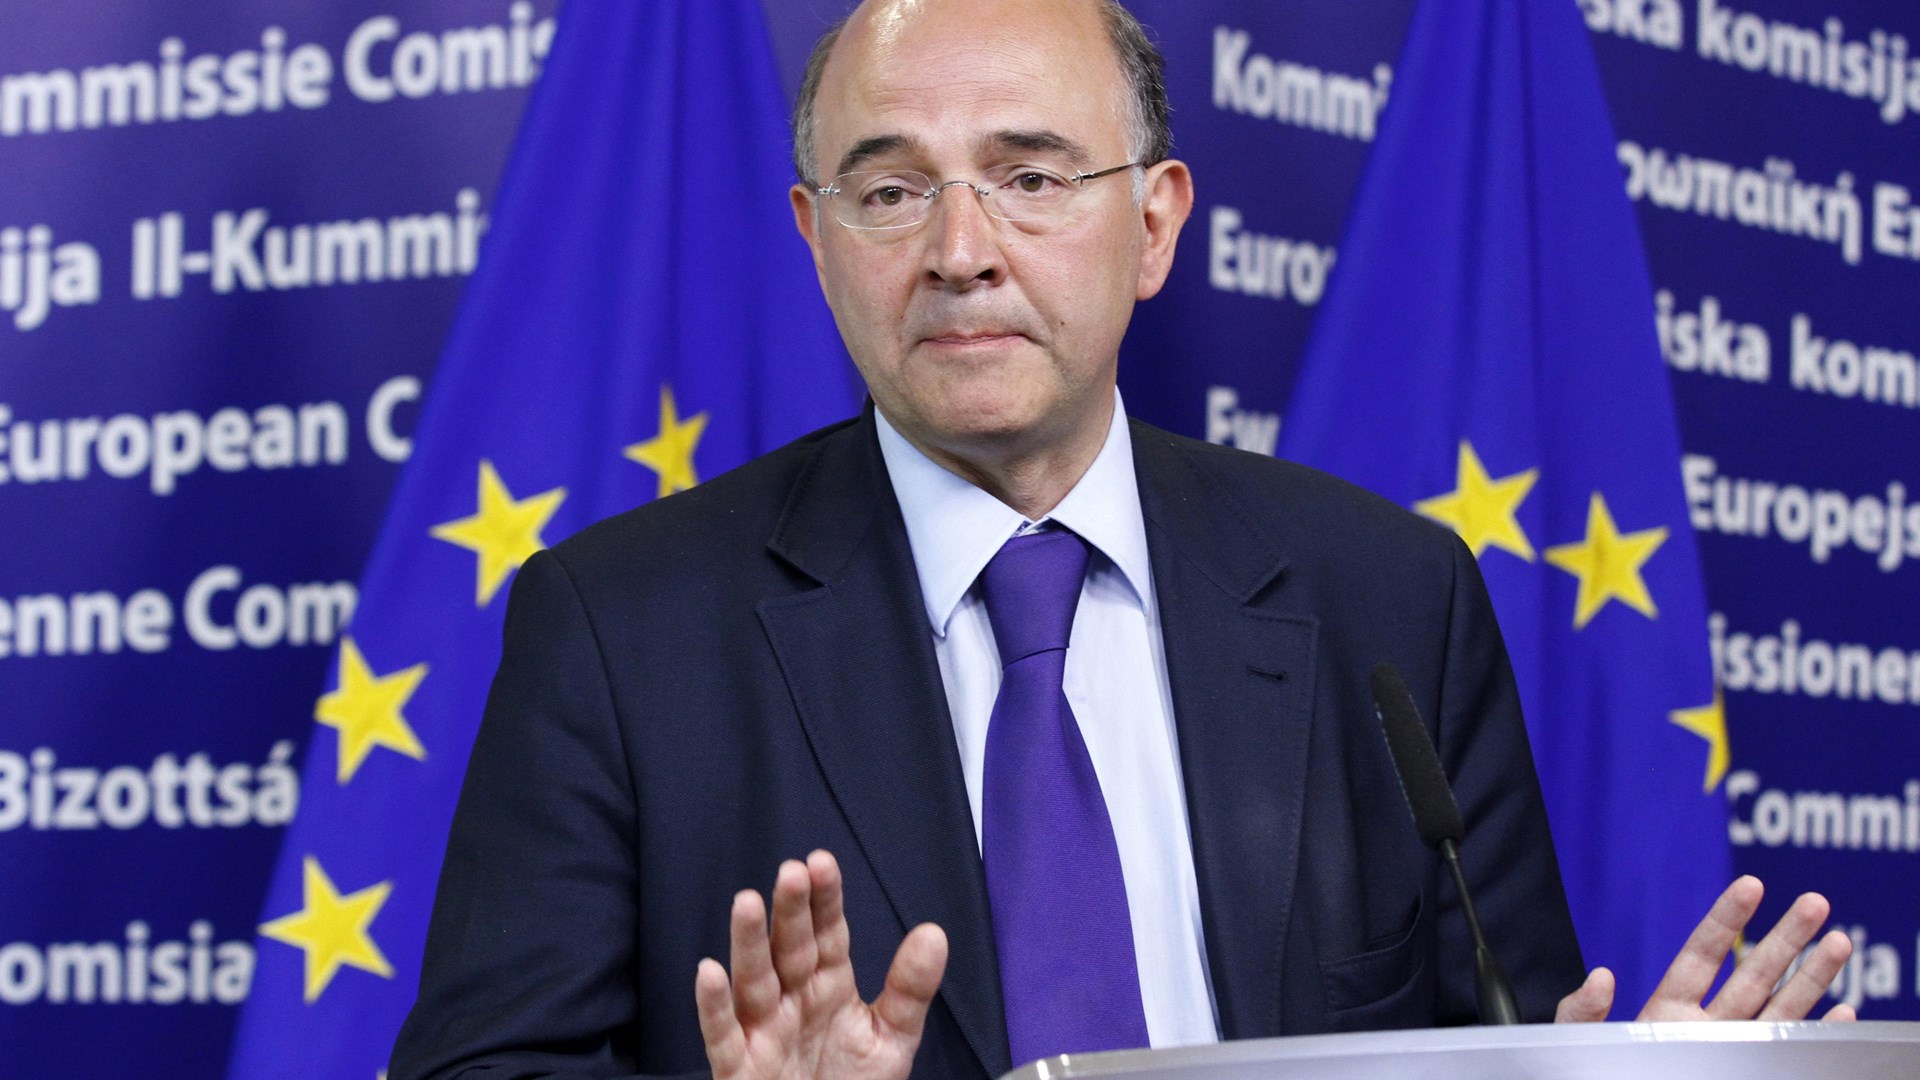 Μοσκοβισί για το Eurogroup: Είμαι βέβαιος ότι θα φτάσουμε σε μια συμφωνία που στέλνει ένα θετικό μήνυμα στις αγορές